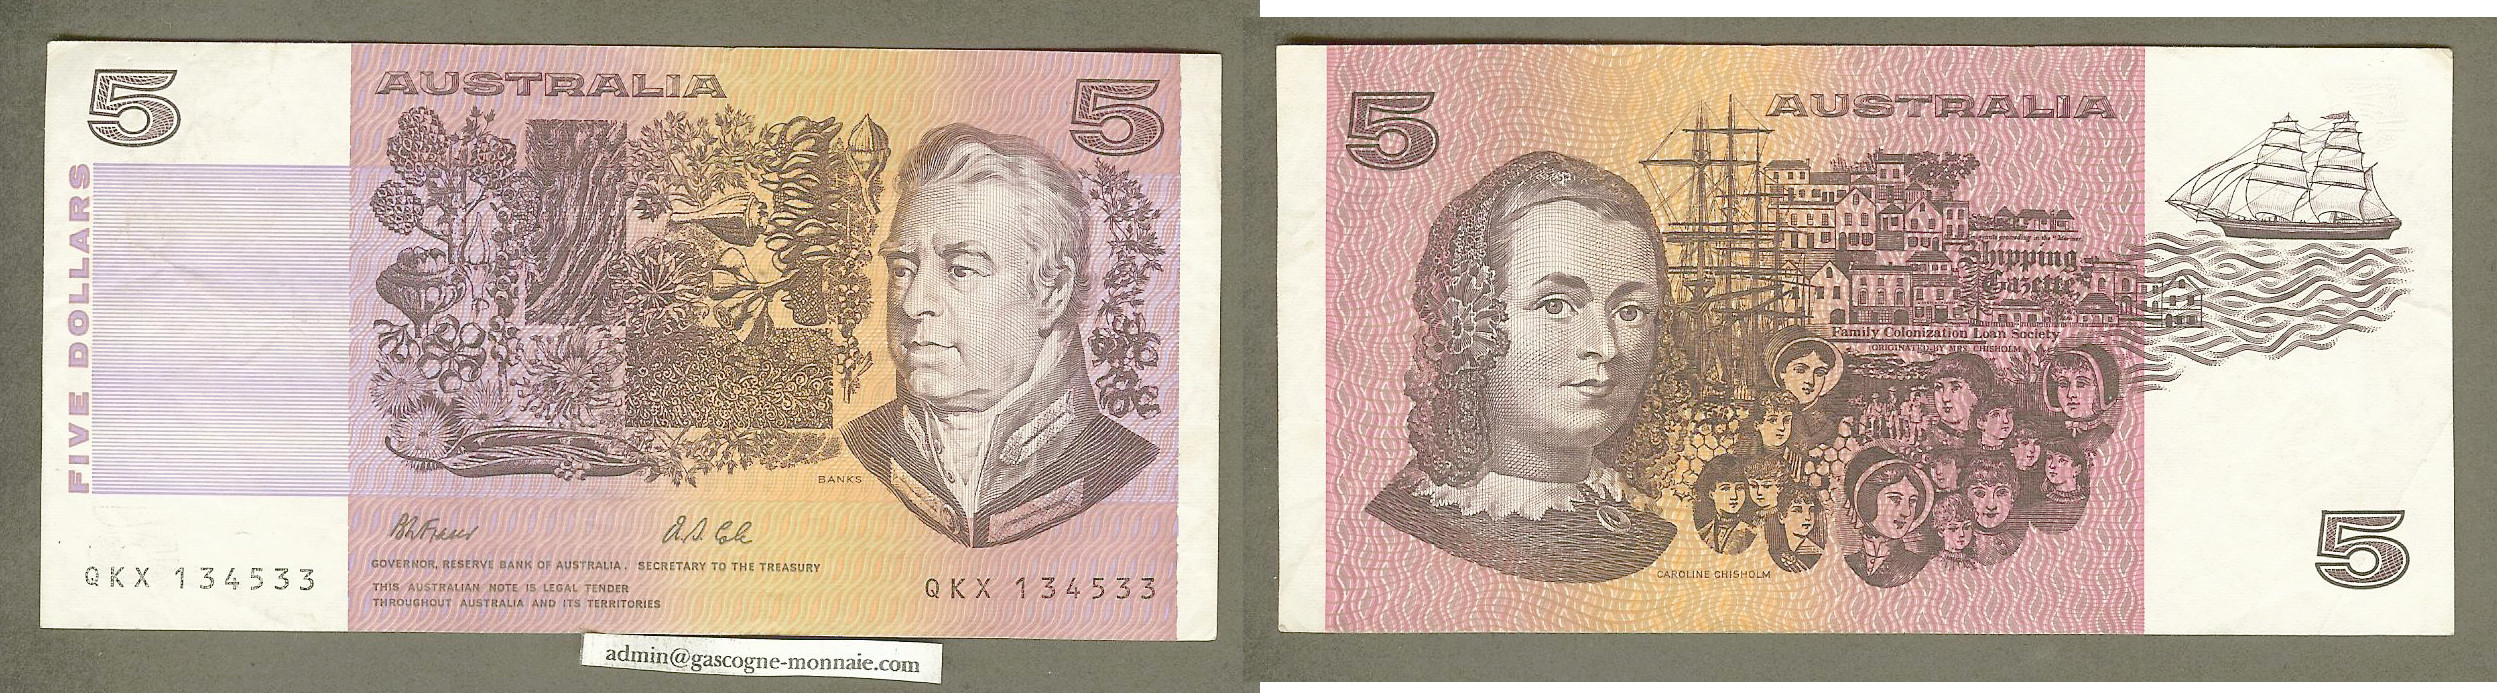 Australie $5 Fraser/Cole 1991 TTB